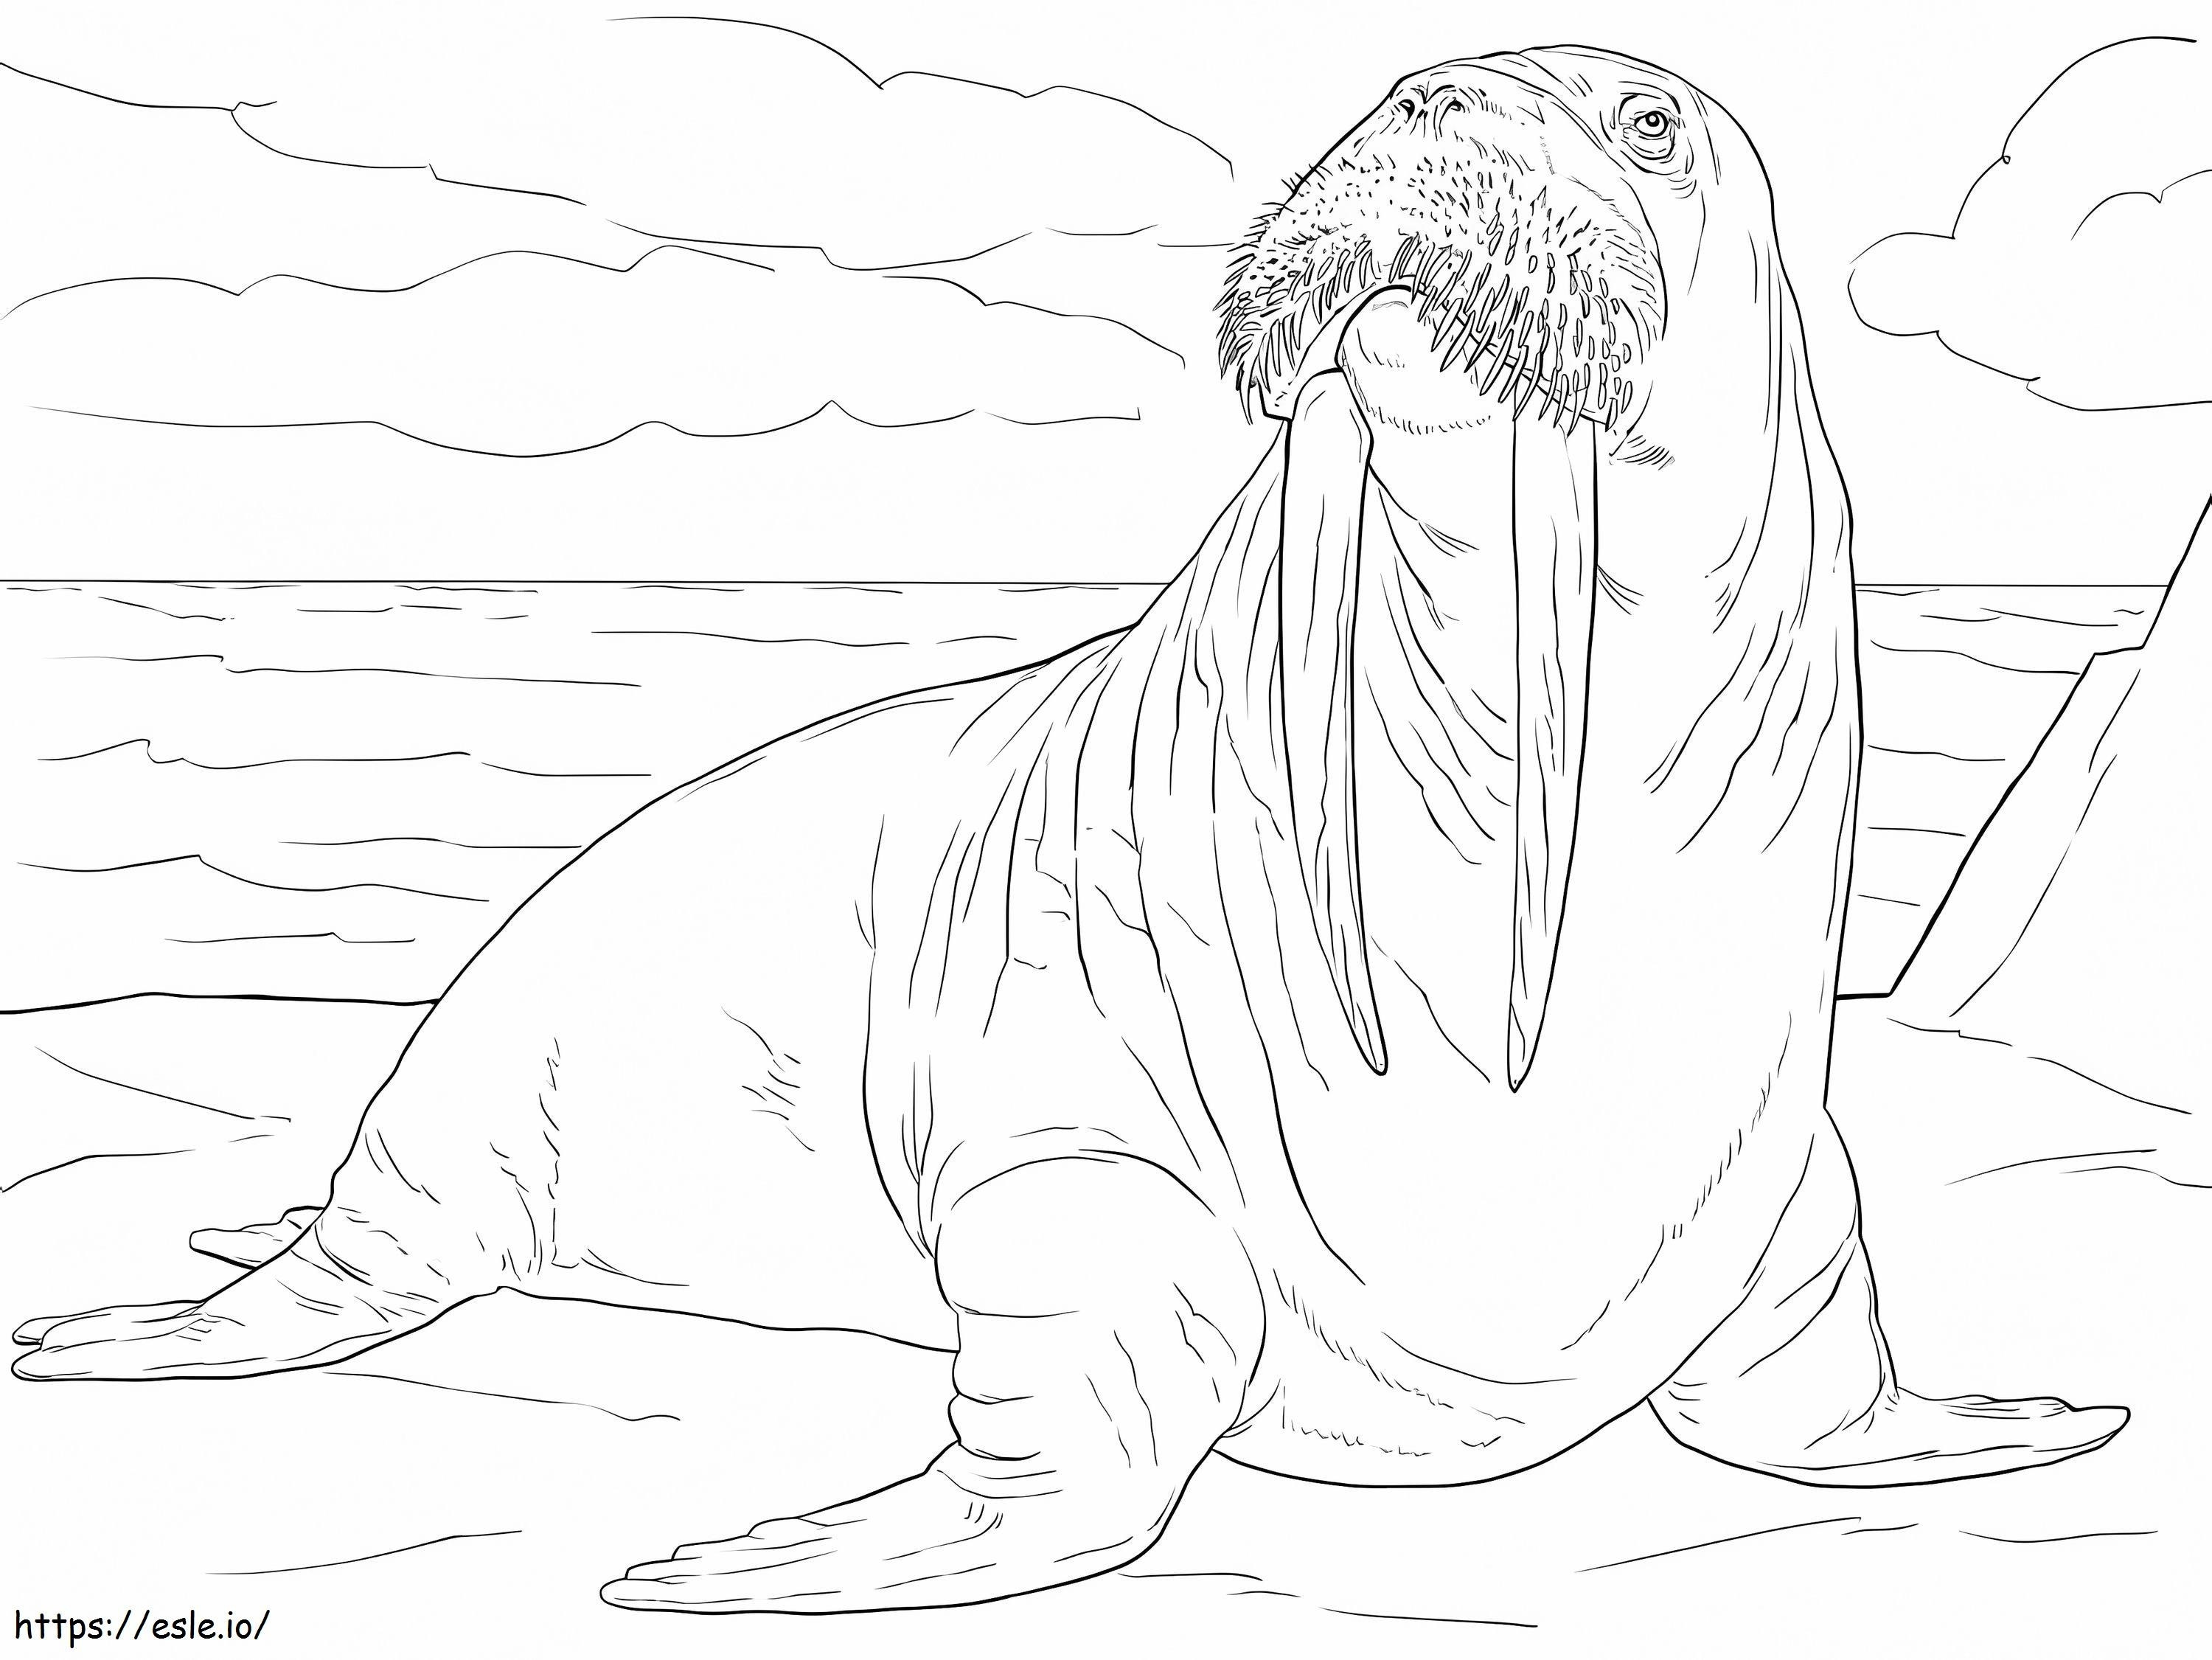 Erwachsenes Walross ausmalbilder